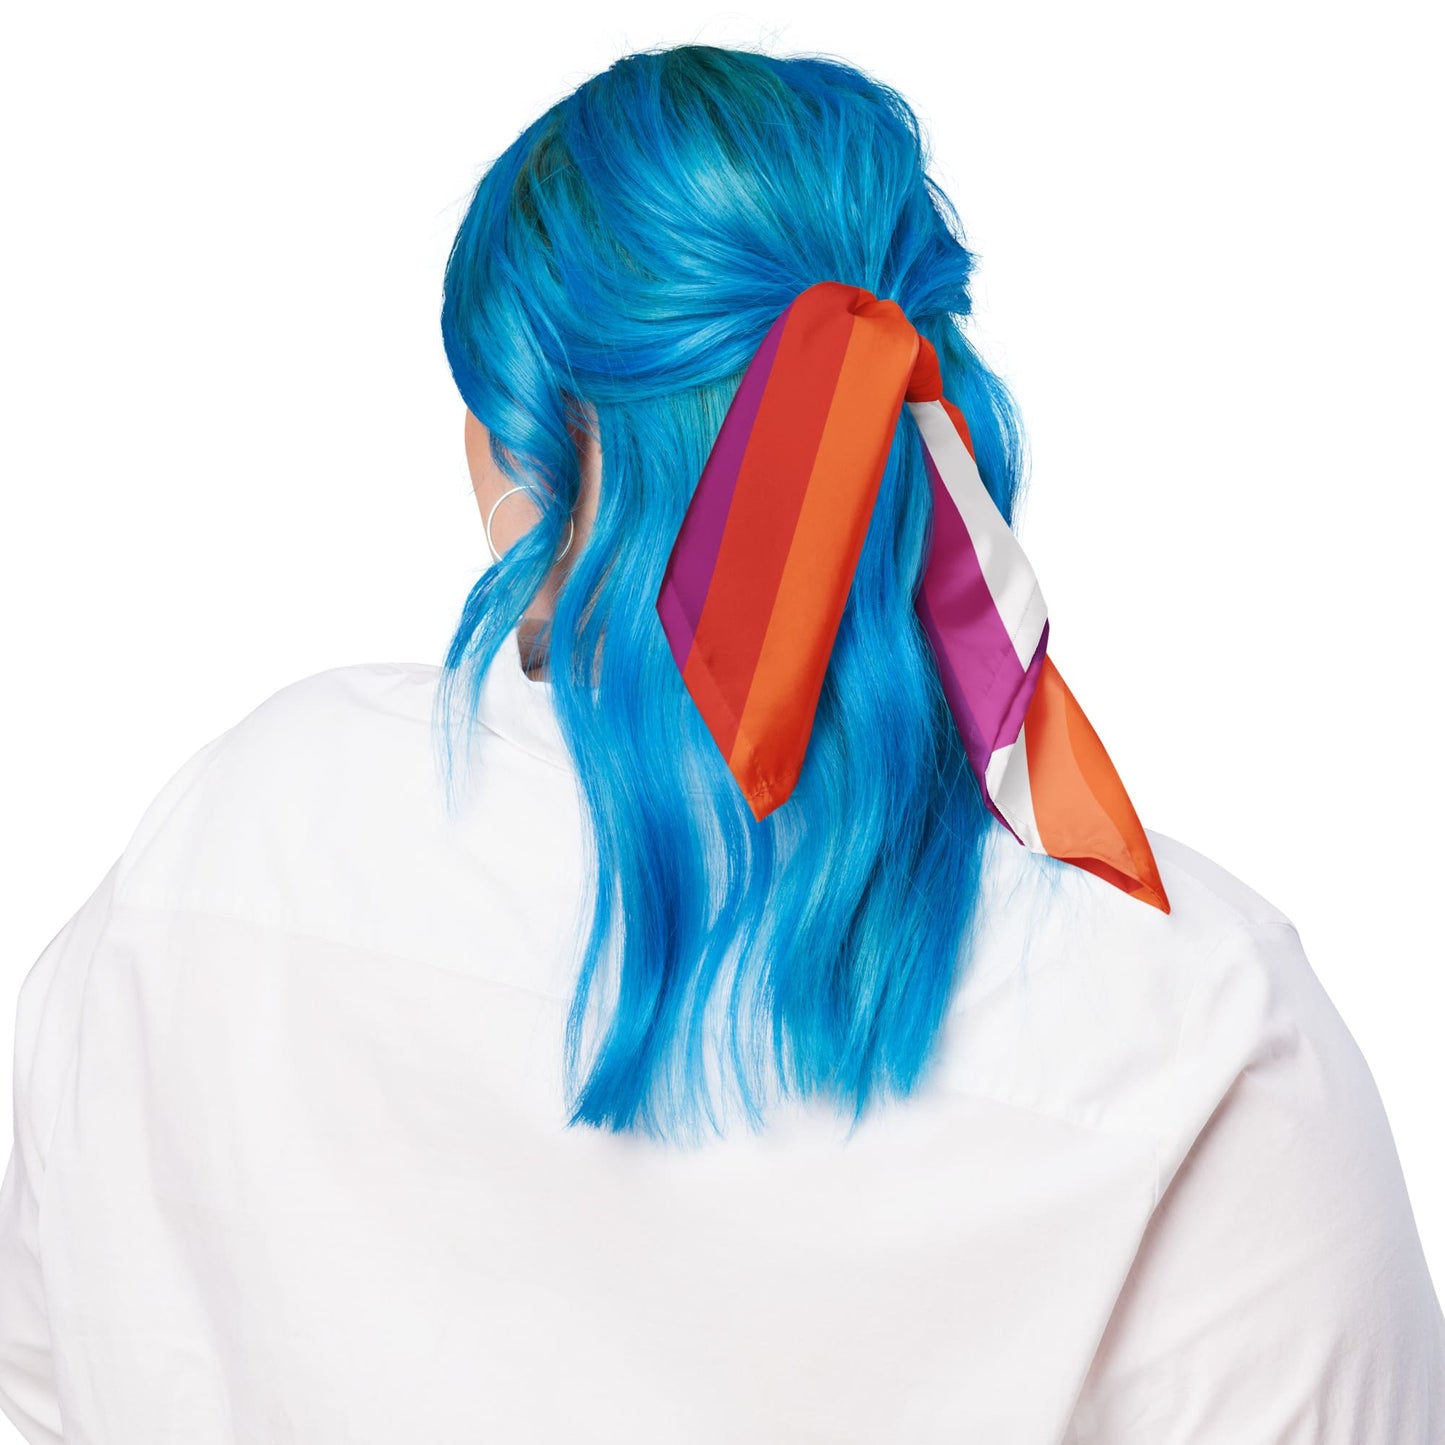 lesbian bandana, as hair ribbon